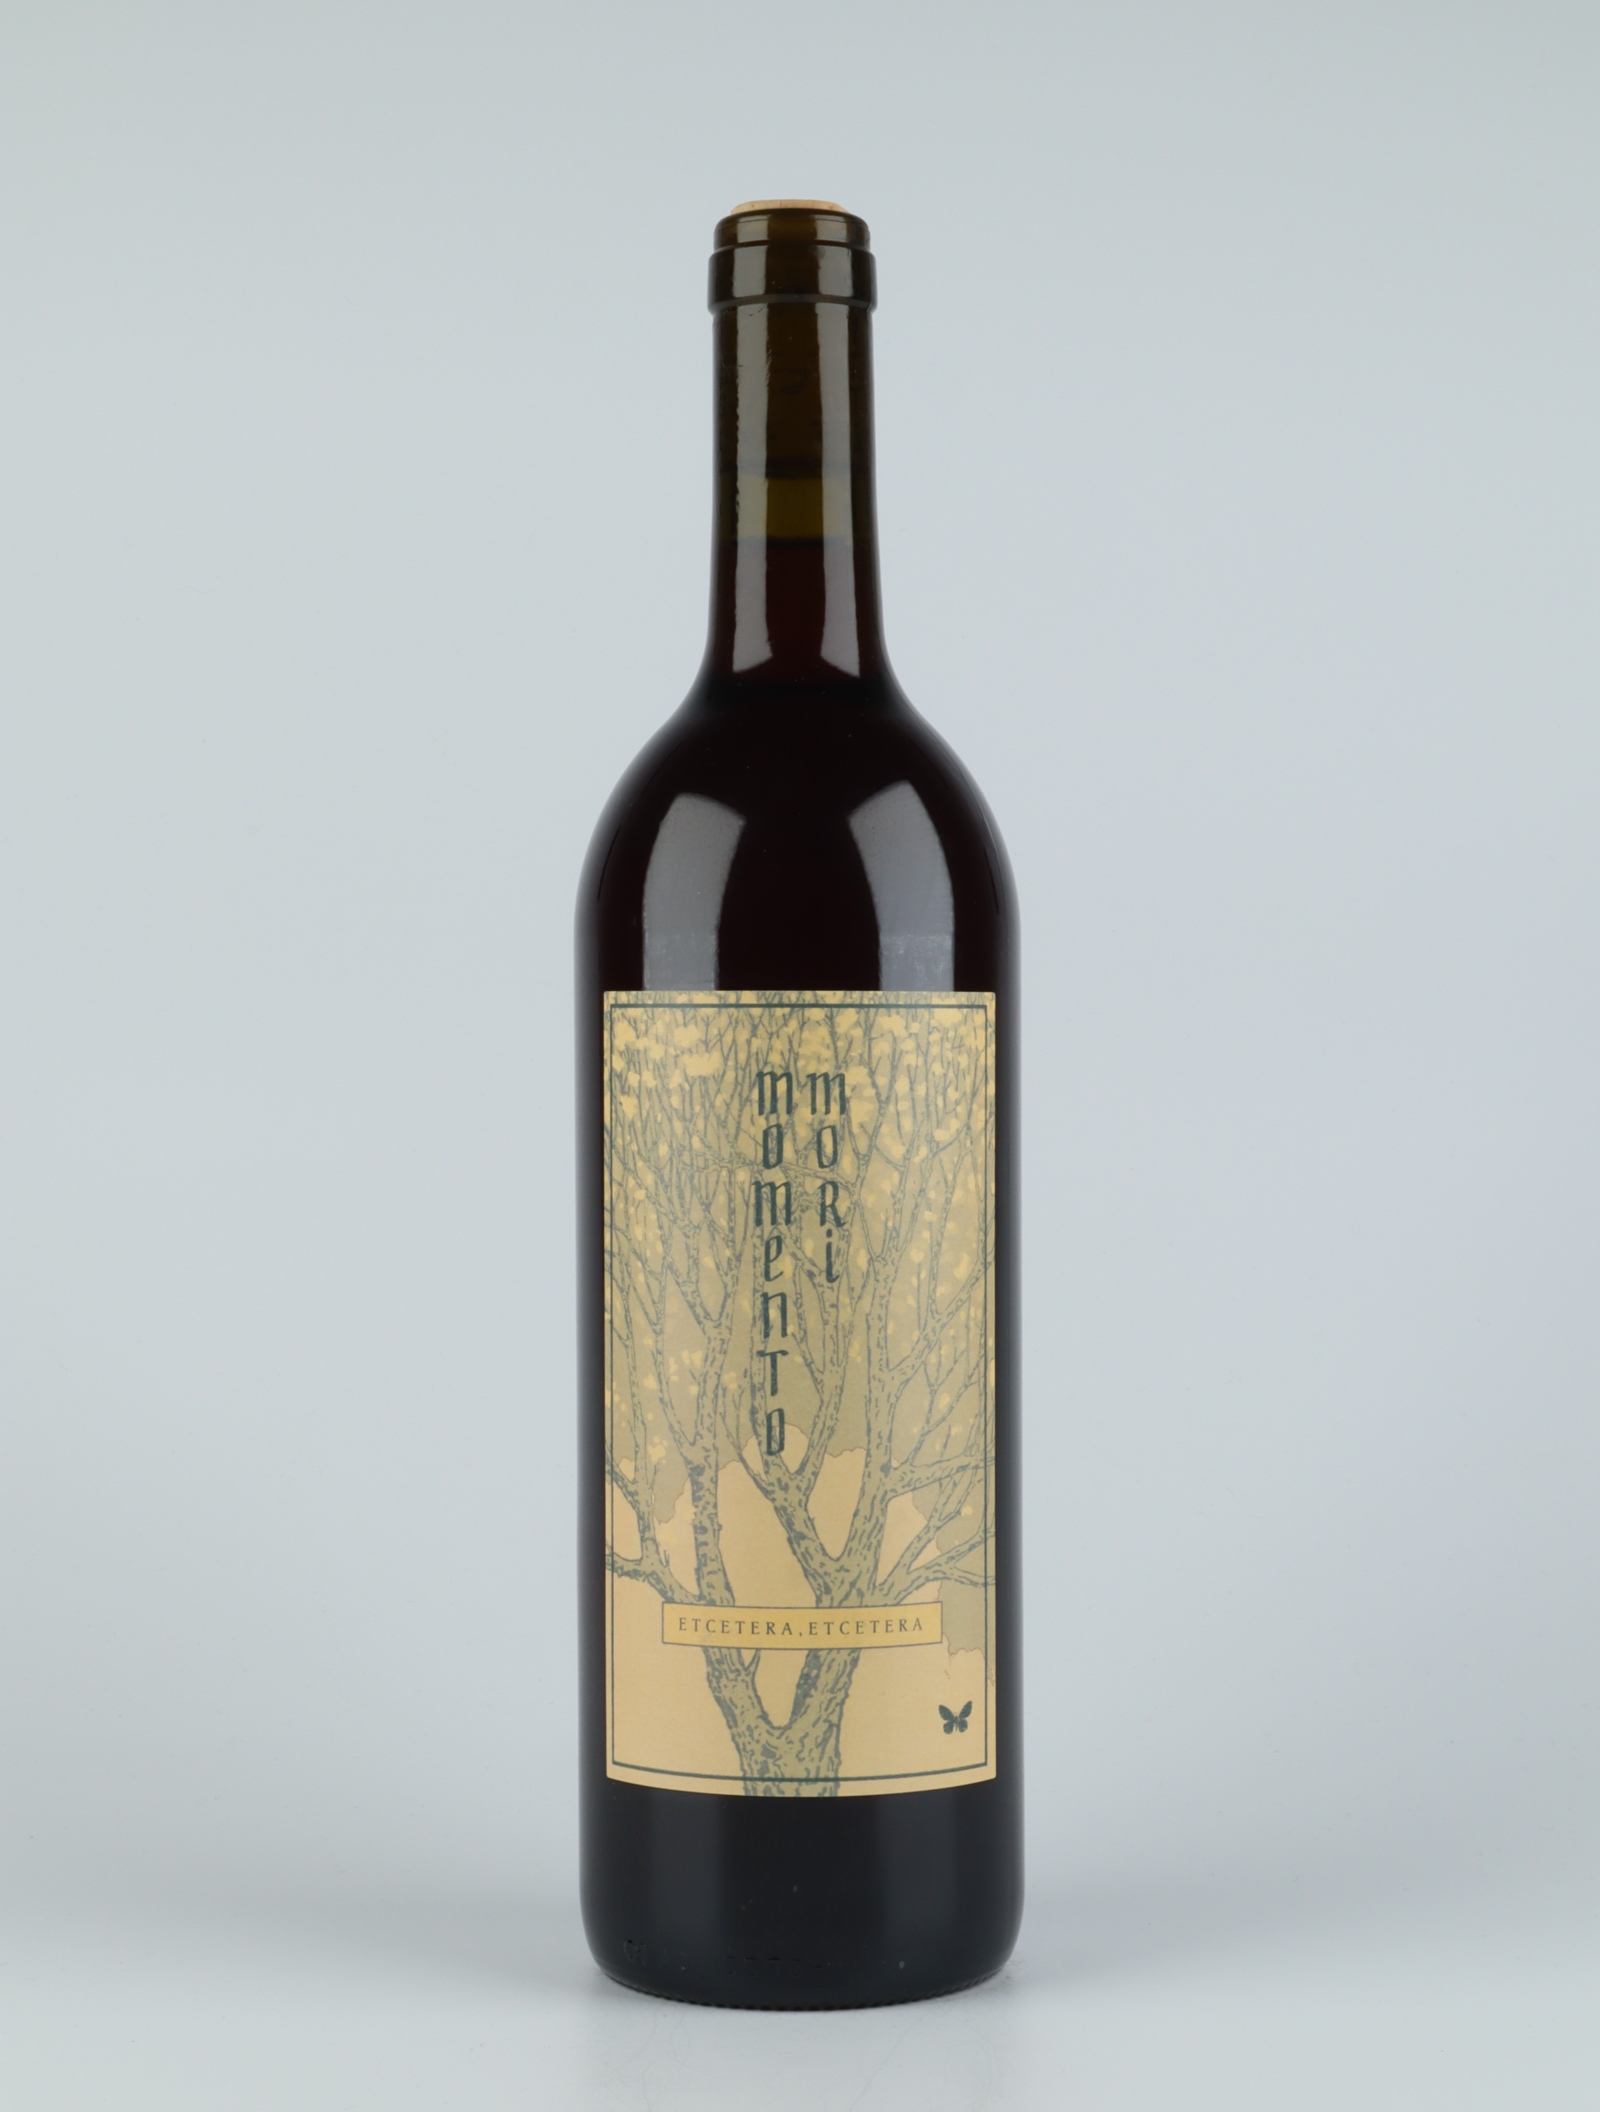 A bottle 2018 Etc Etc Red wine from Momento Mori, Victoria in Australia